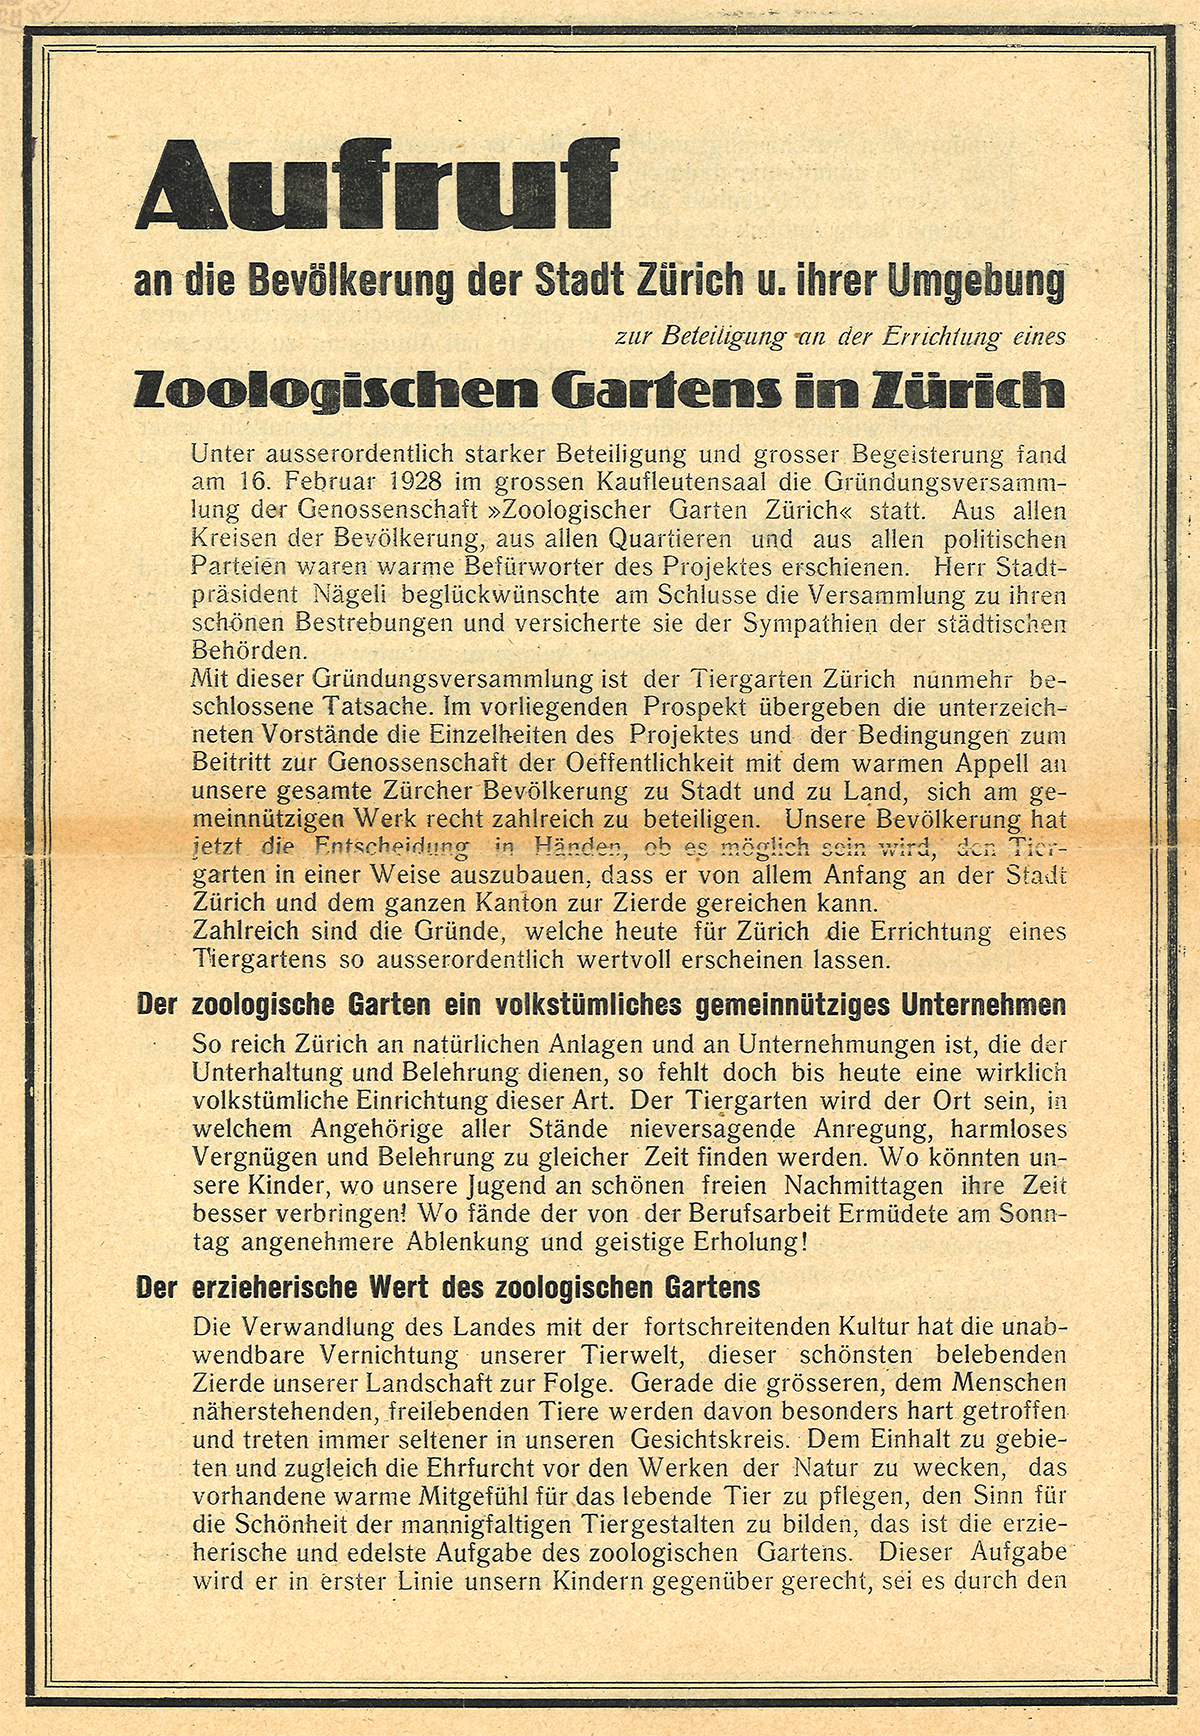 Kapital der Genossenschaft Zoologischer Garten Zürich soll den Bau des Zoos mitfinanzieren. Mit diesem Faltblatt von 1928 rufen die Genossenschaft und die Tiergartengesellschaft Zürich dazu auf, Anteilscheine zu kaufen. (Bild: ZB Zürich)